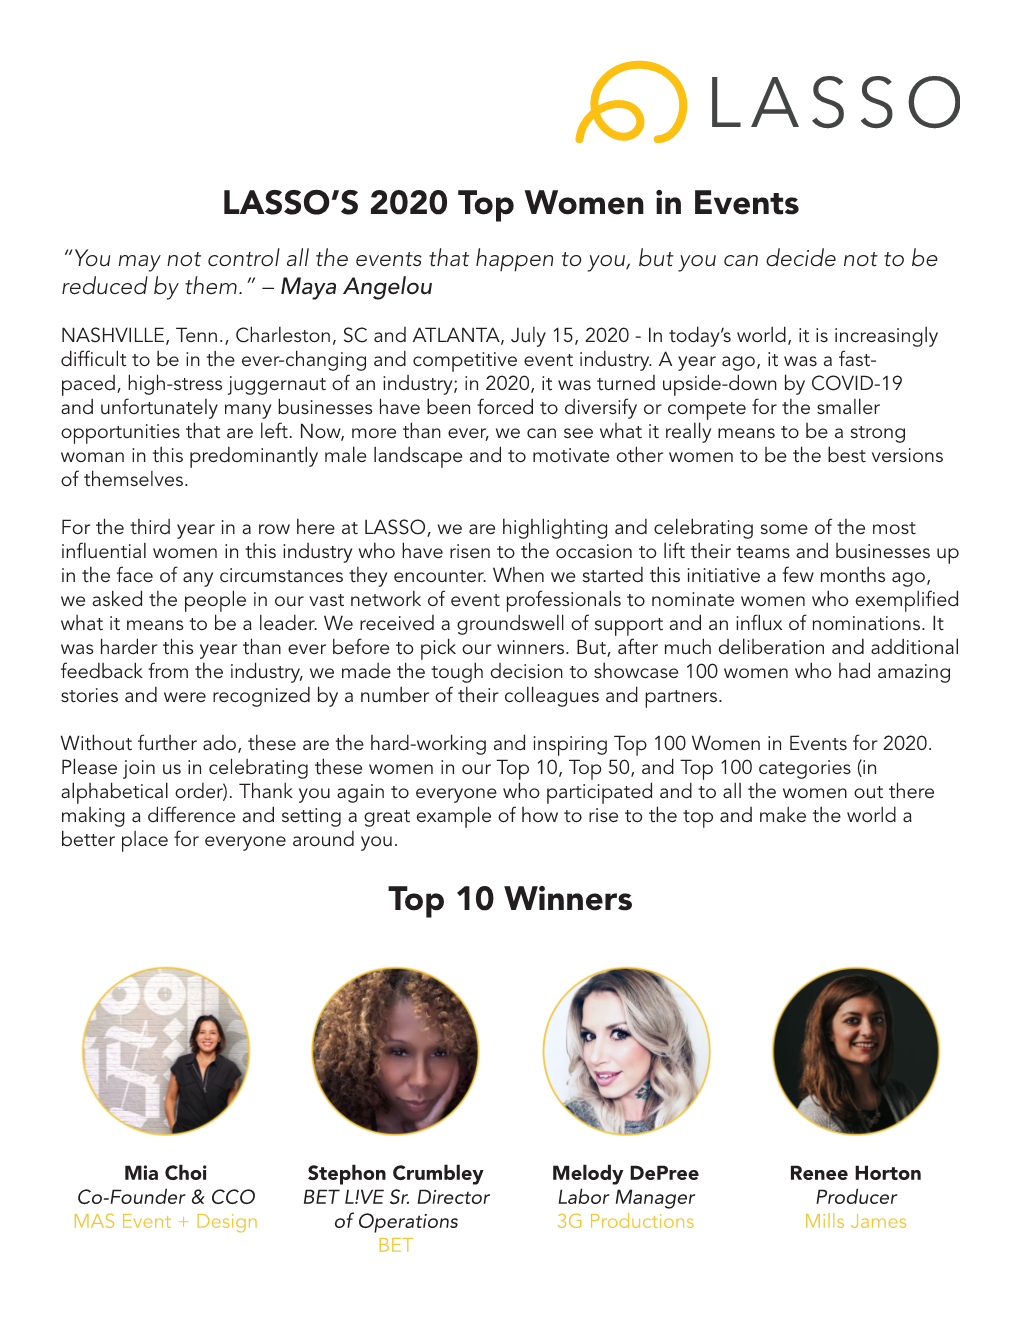 LASSO's 2020 Top Women in Events Top 10 Winners